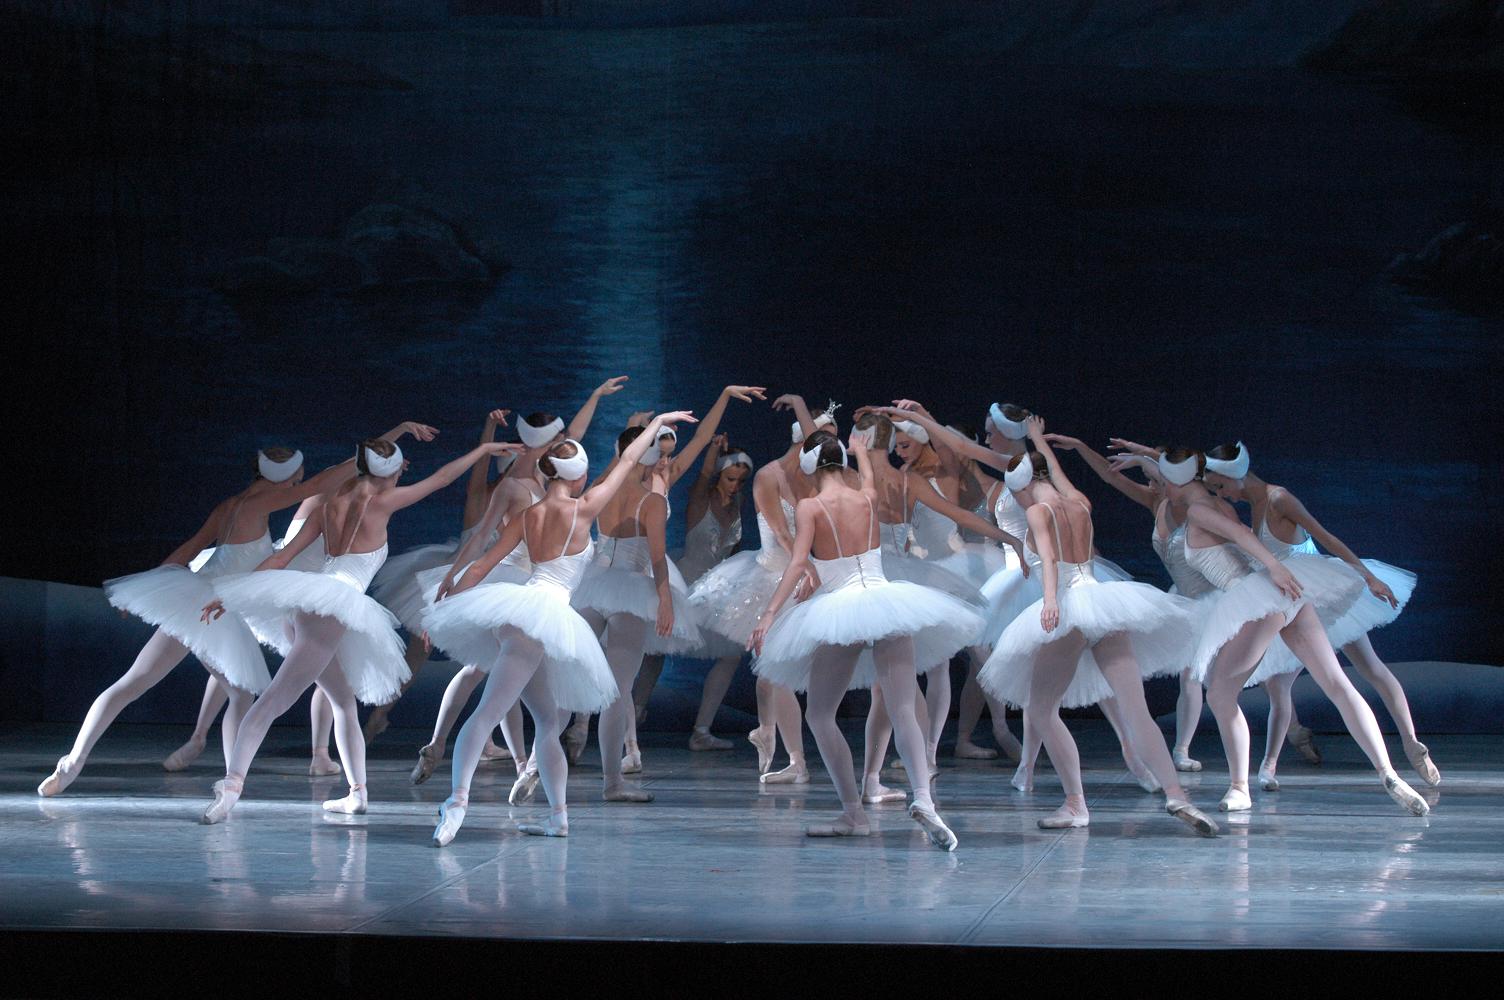 swan lake ballet